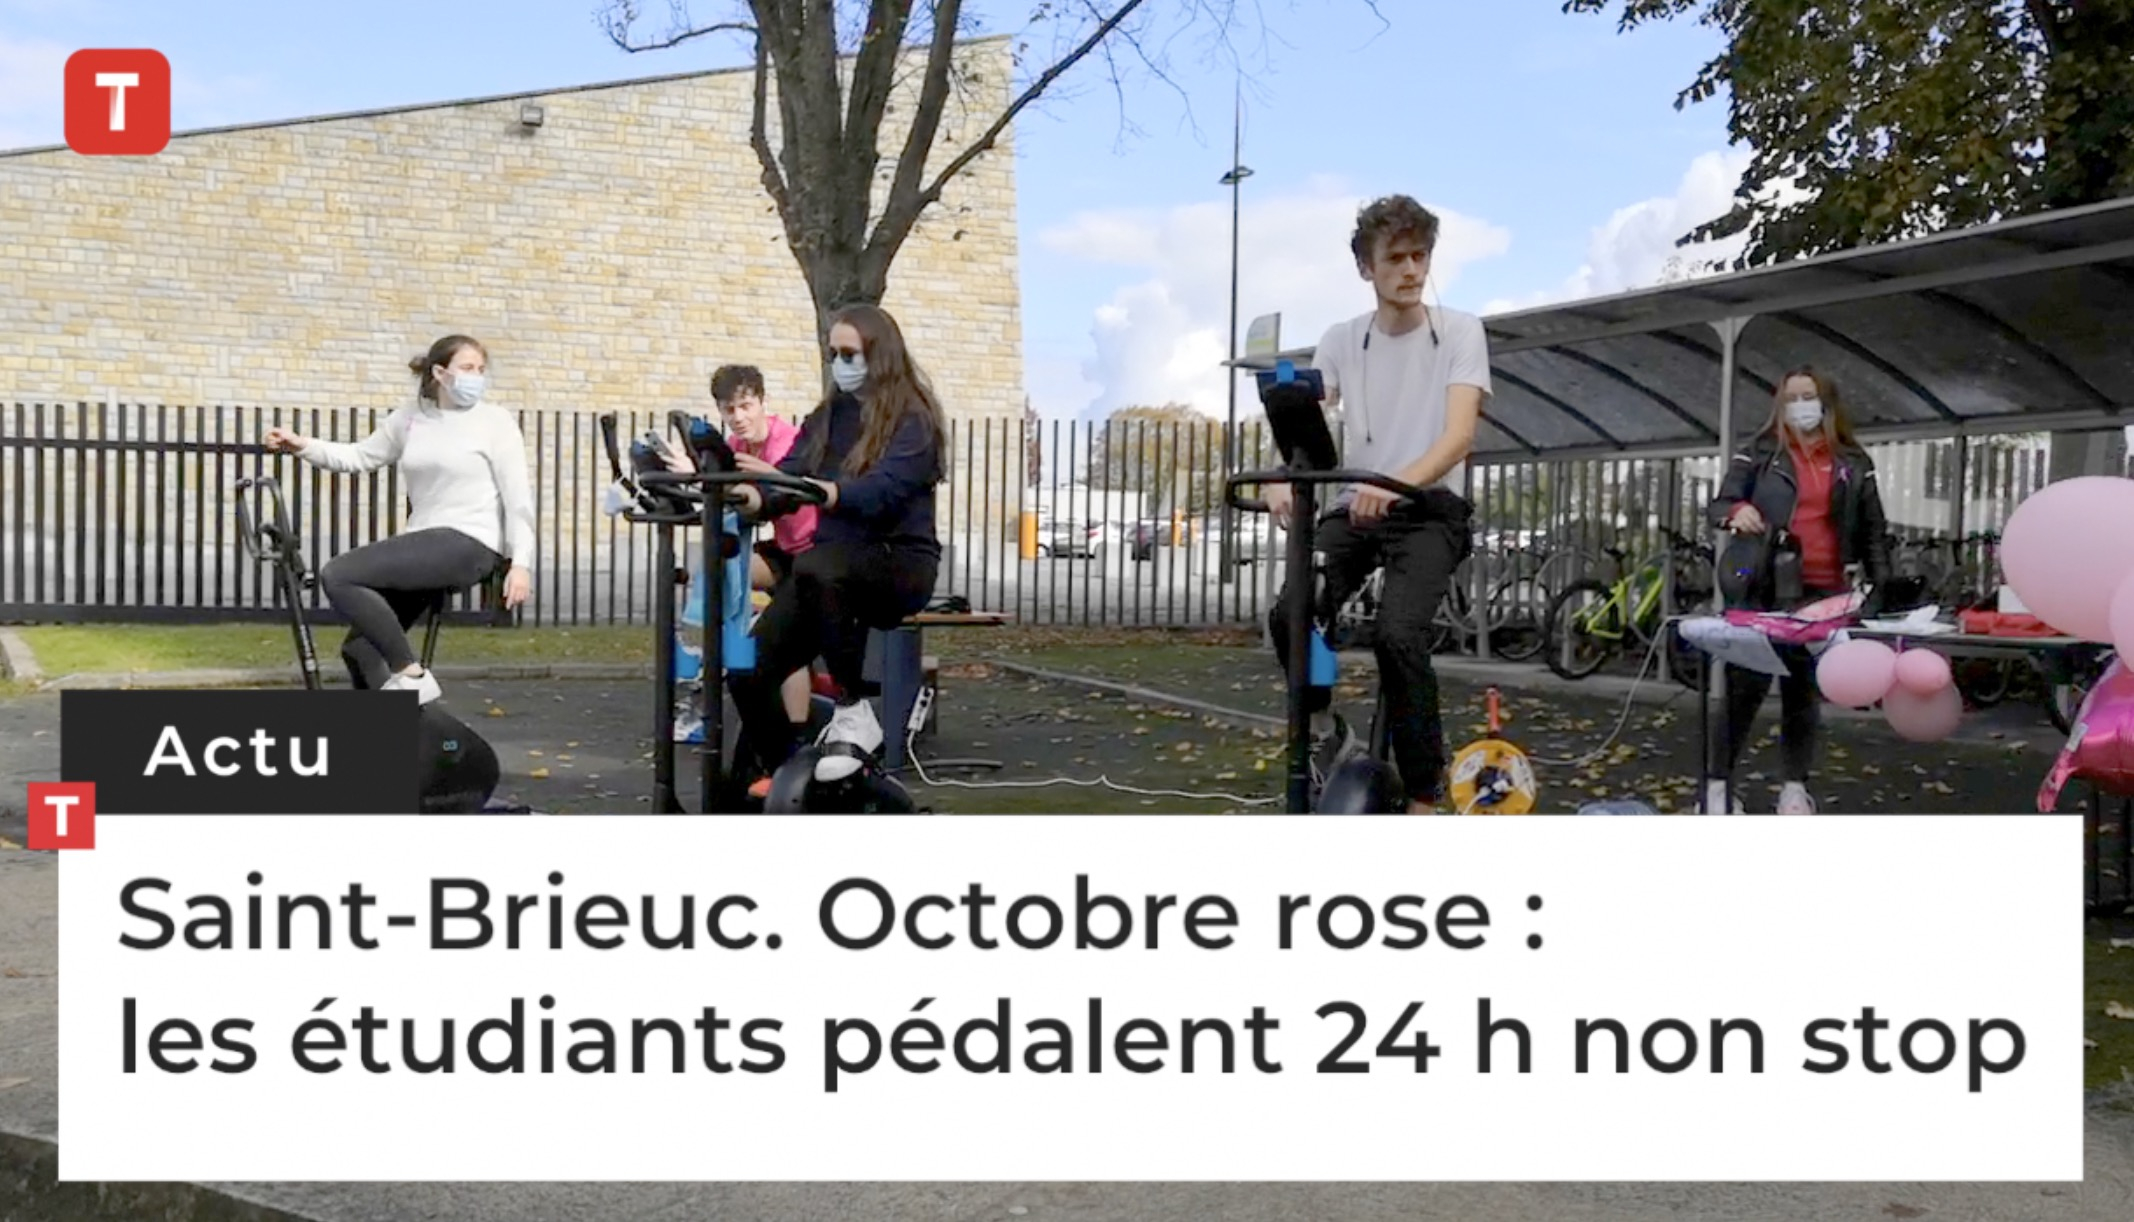 Saint-Brieuc. Octobre rose : les étudiants pédalent 24 h non stop pour la lutte contre le cancer du sein (Le Télégramme)